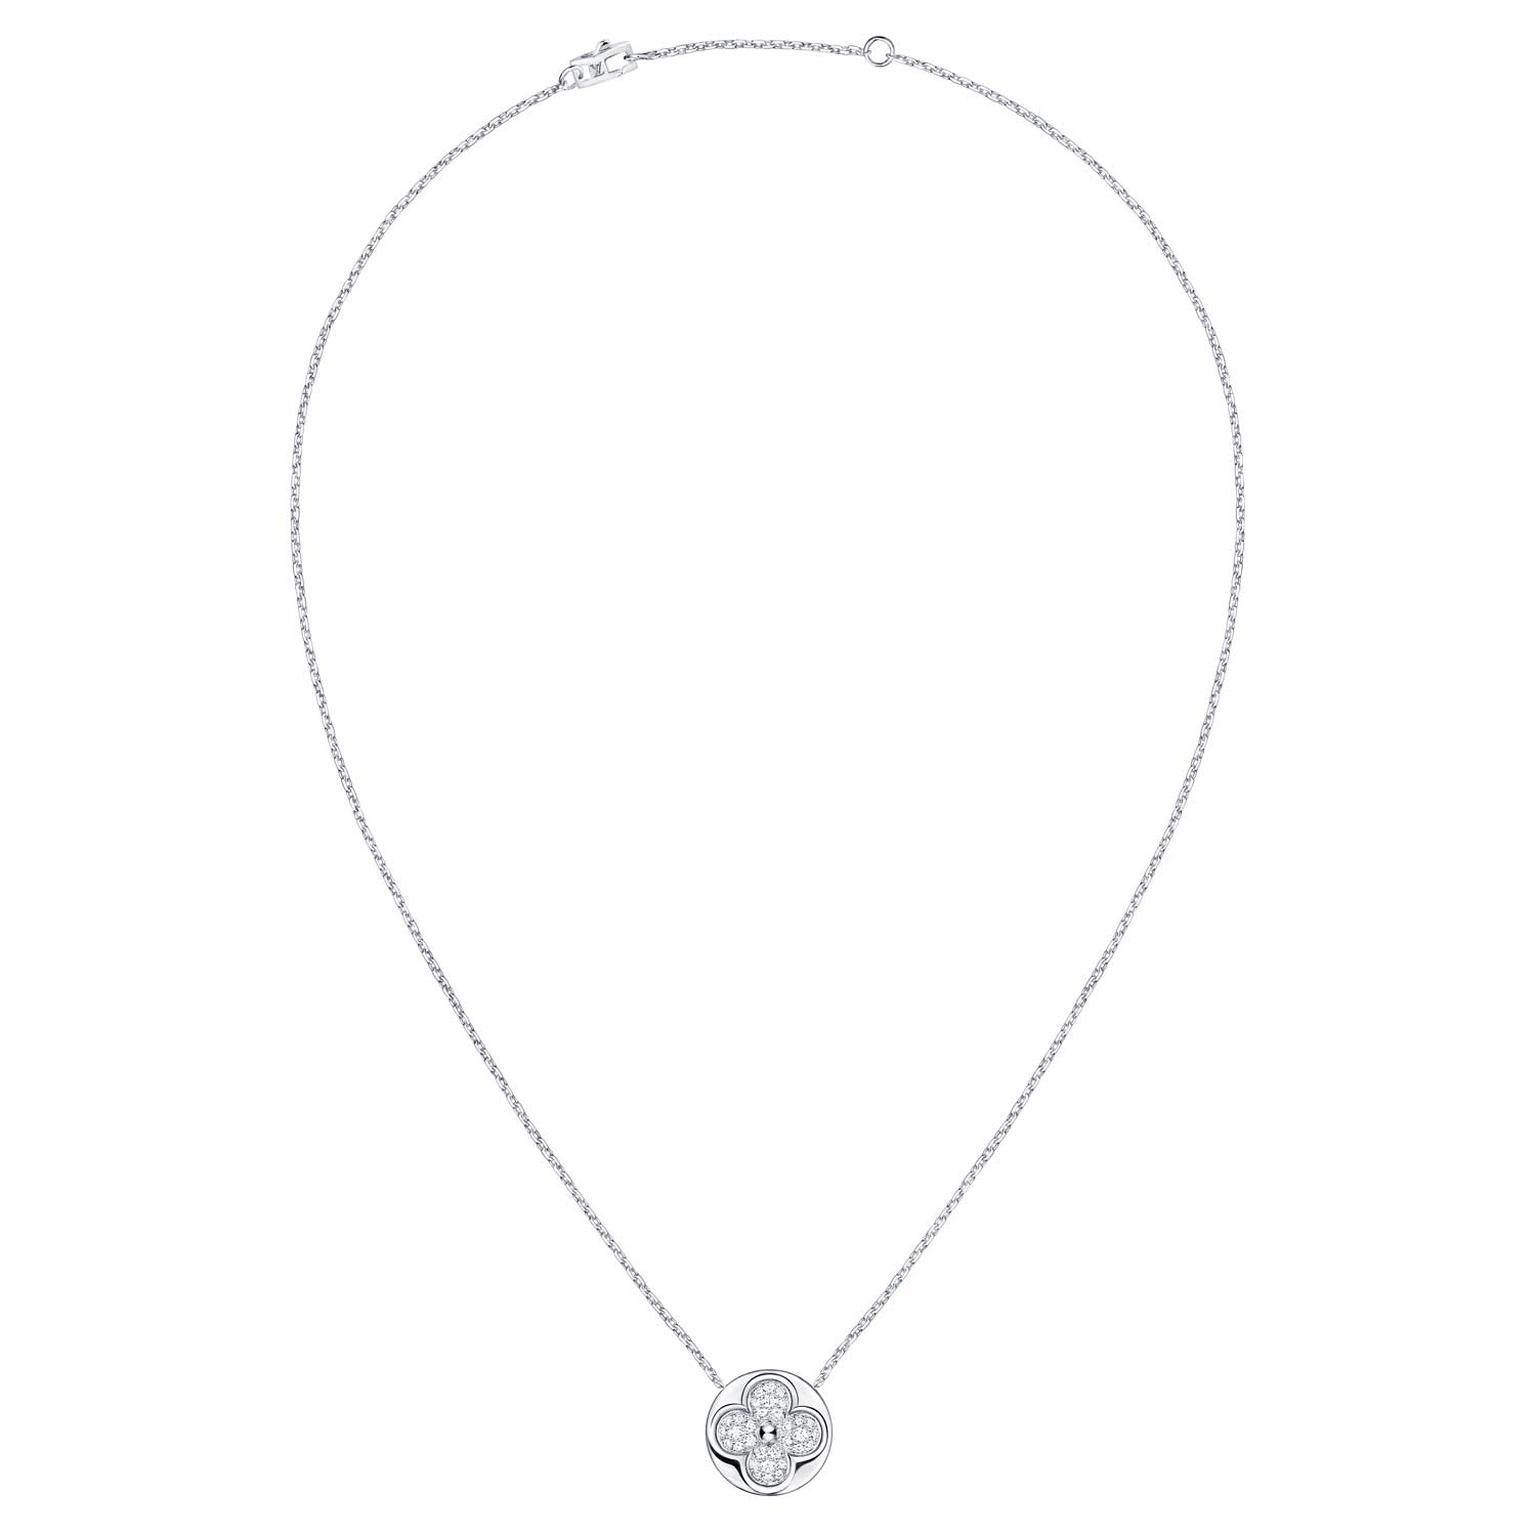 Louis Vuitton Diamond Blossom necklace